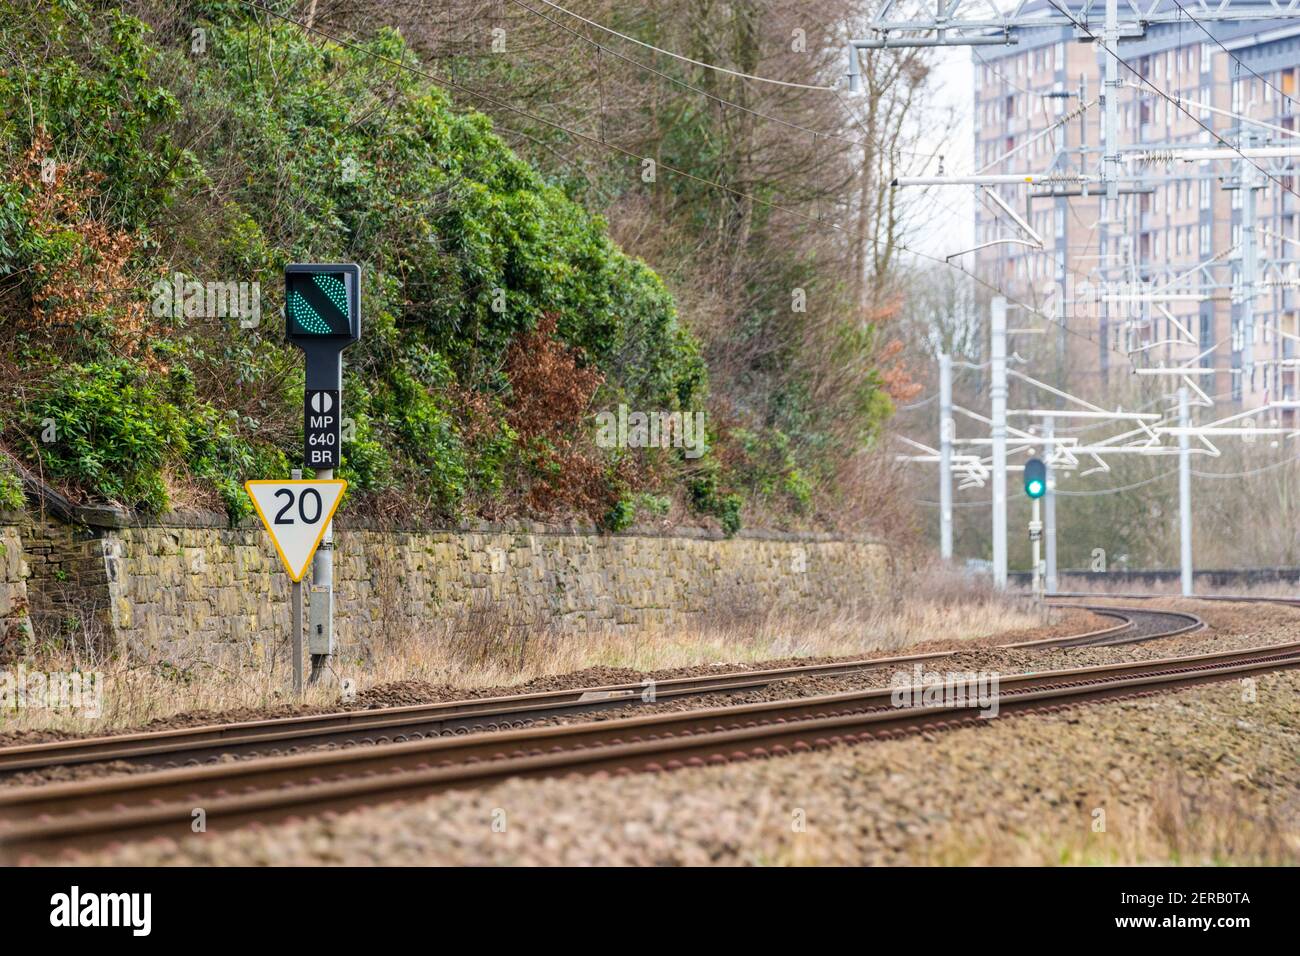 Britische Bahnbanner-Repeater-Signal, das den Status eines verborgenen Signals (zum Beispiel um eine Kurve) im Voraus anzeigt. Grünes Signal (fortfahren). Stockfoto